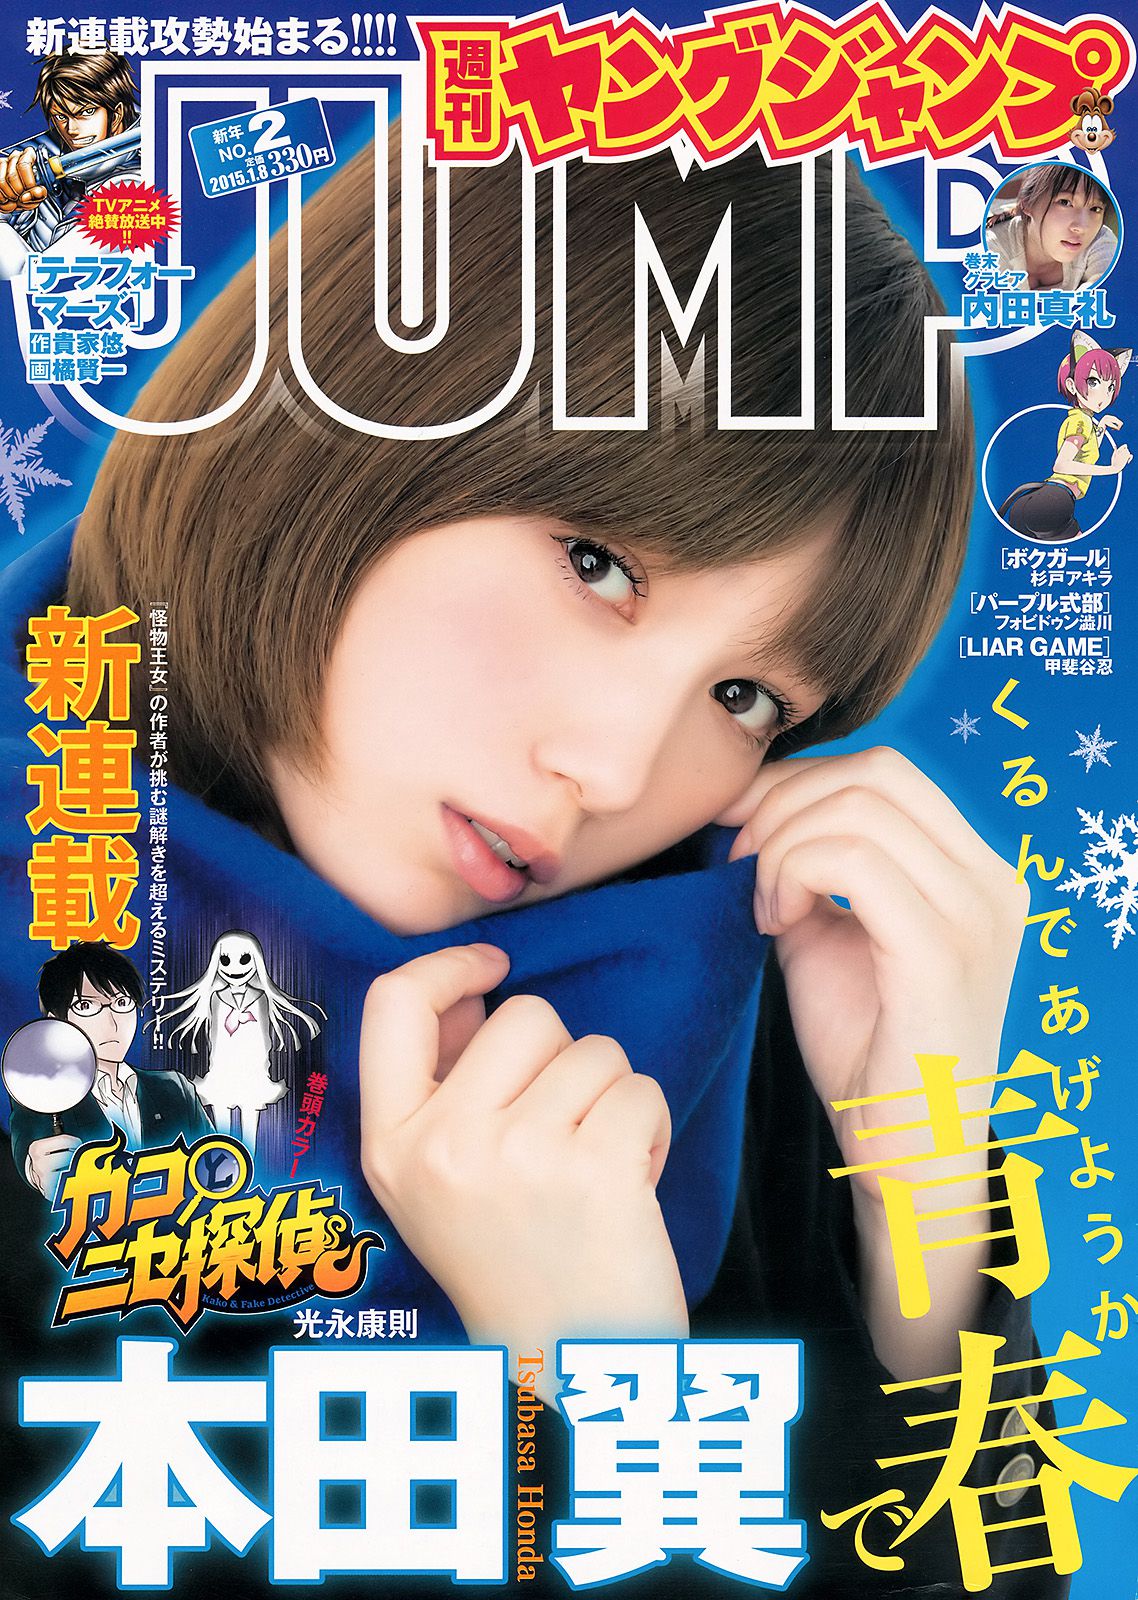 本田翼 内田真礼 [Weekly Young Jump] 2015年No.02 写真杂志1